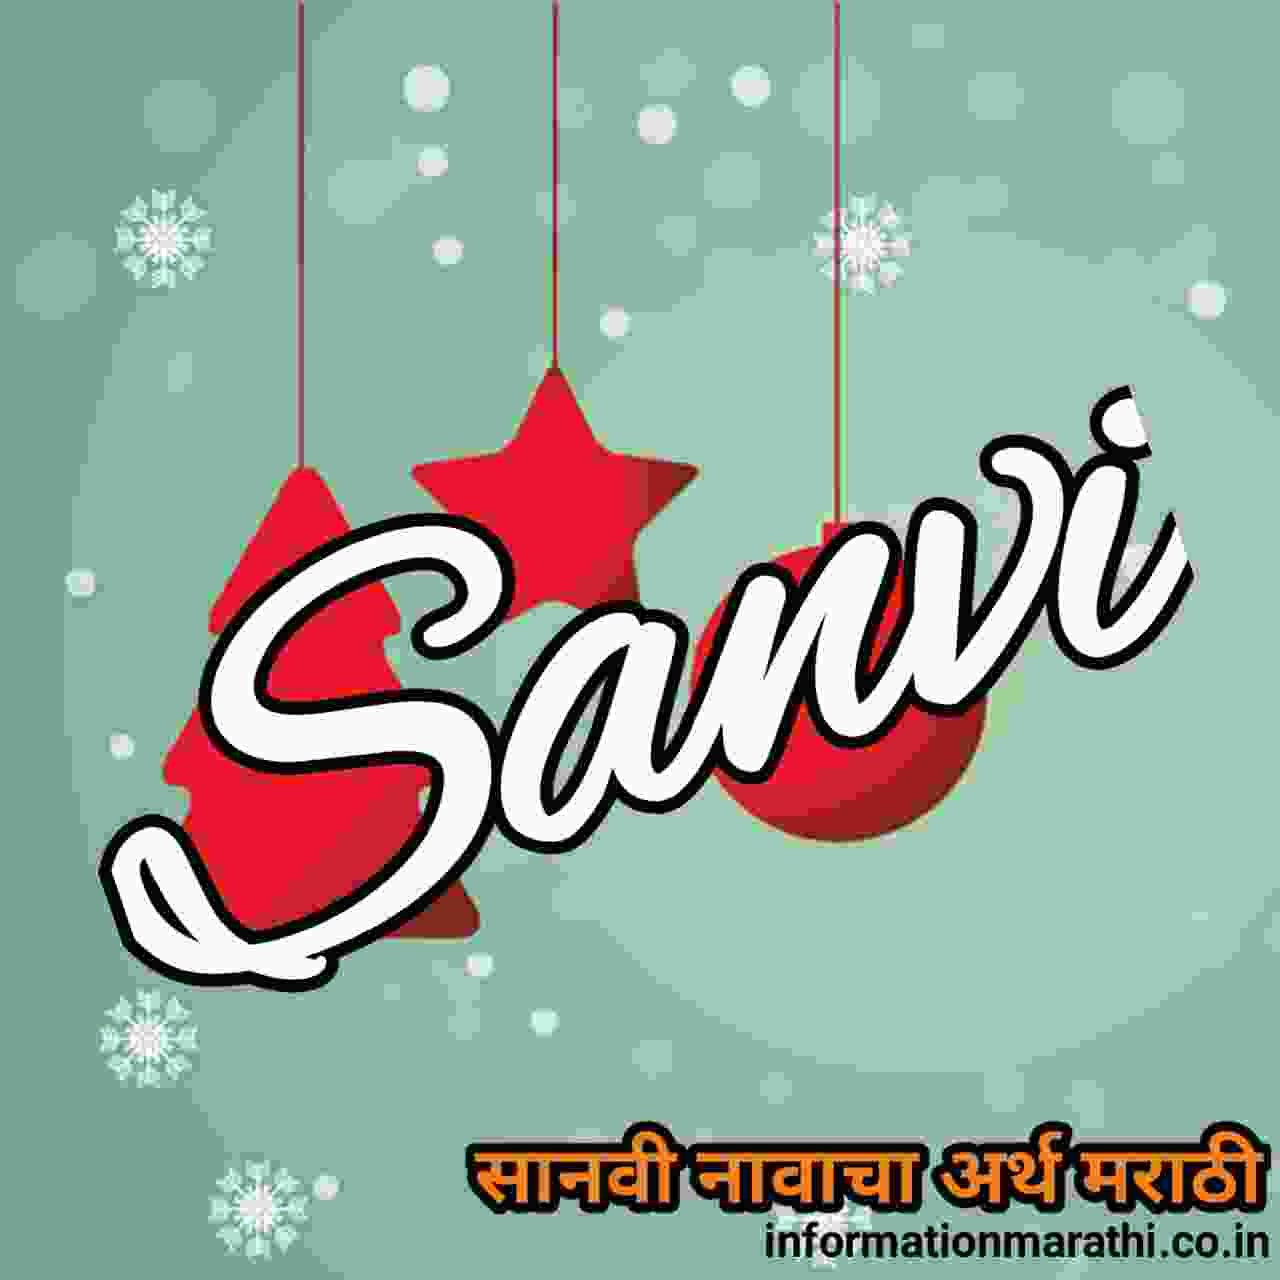 सानवी नावाचा अर्थ मराठीमध्ये । Sanvi Meaning in Marathi